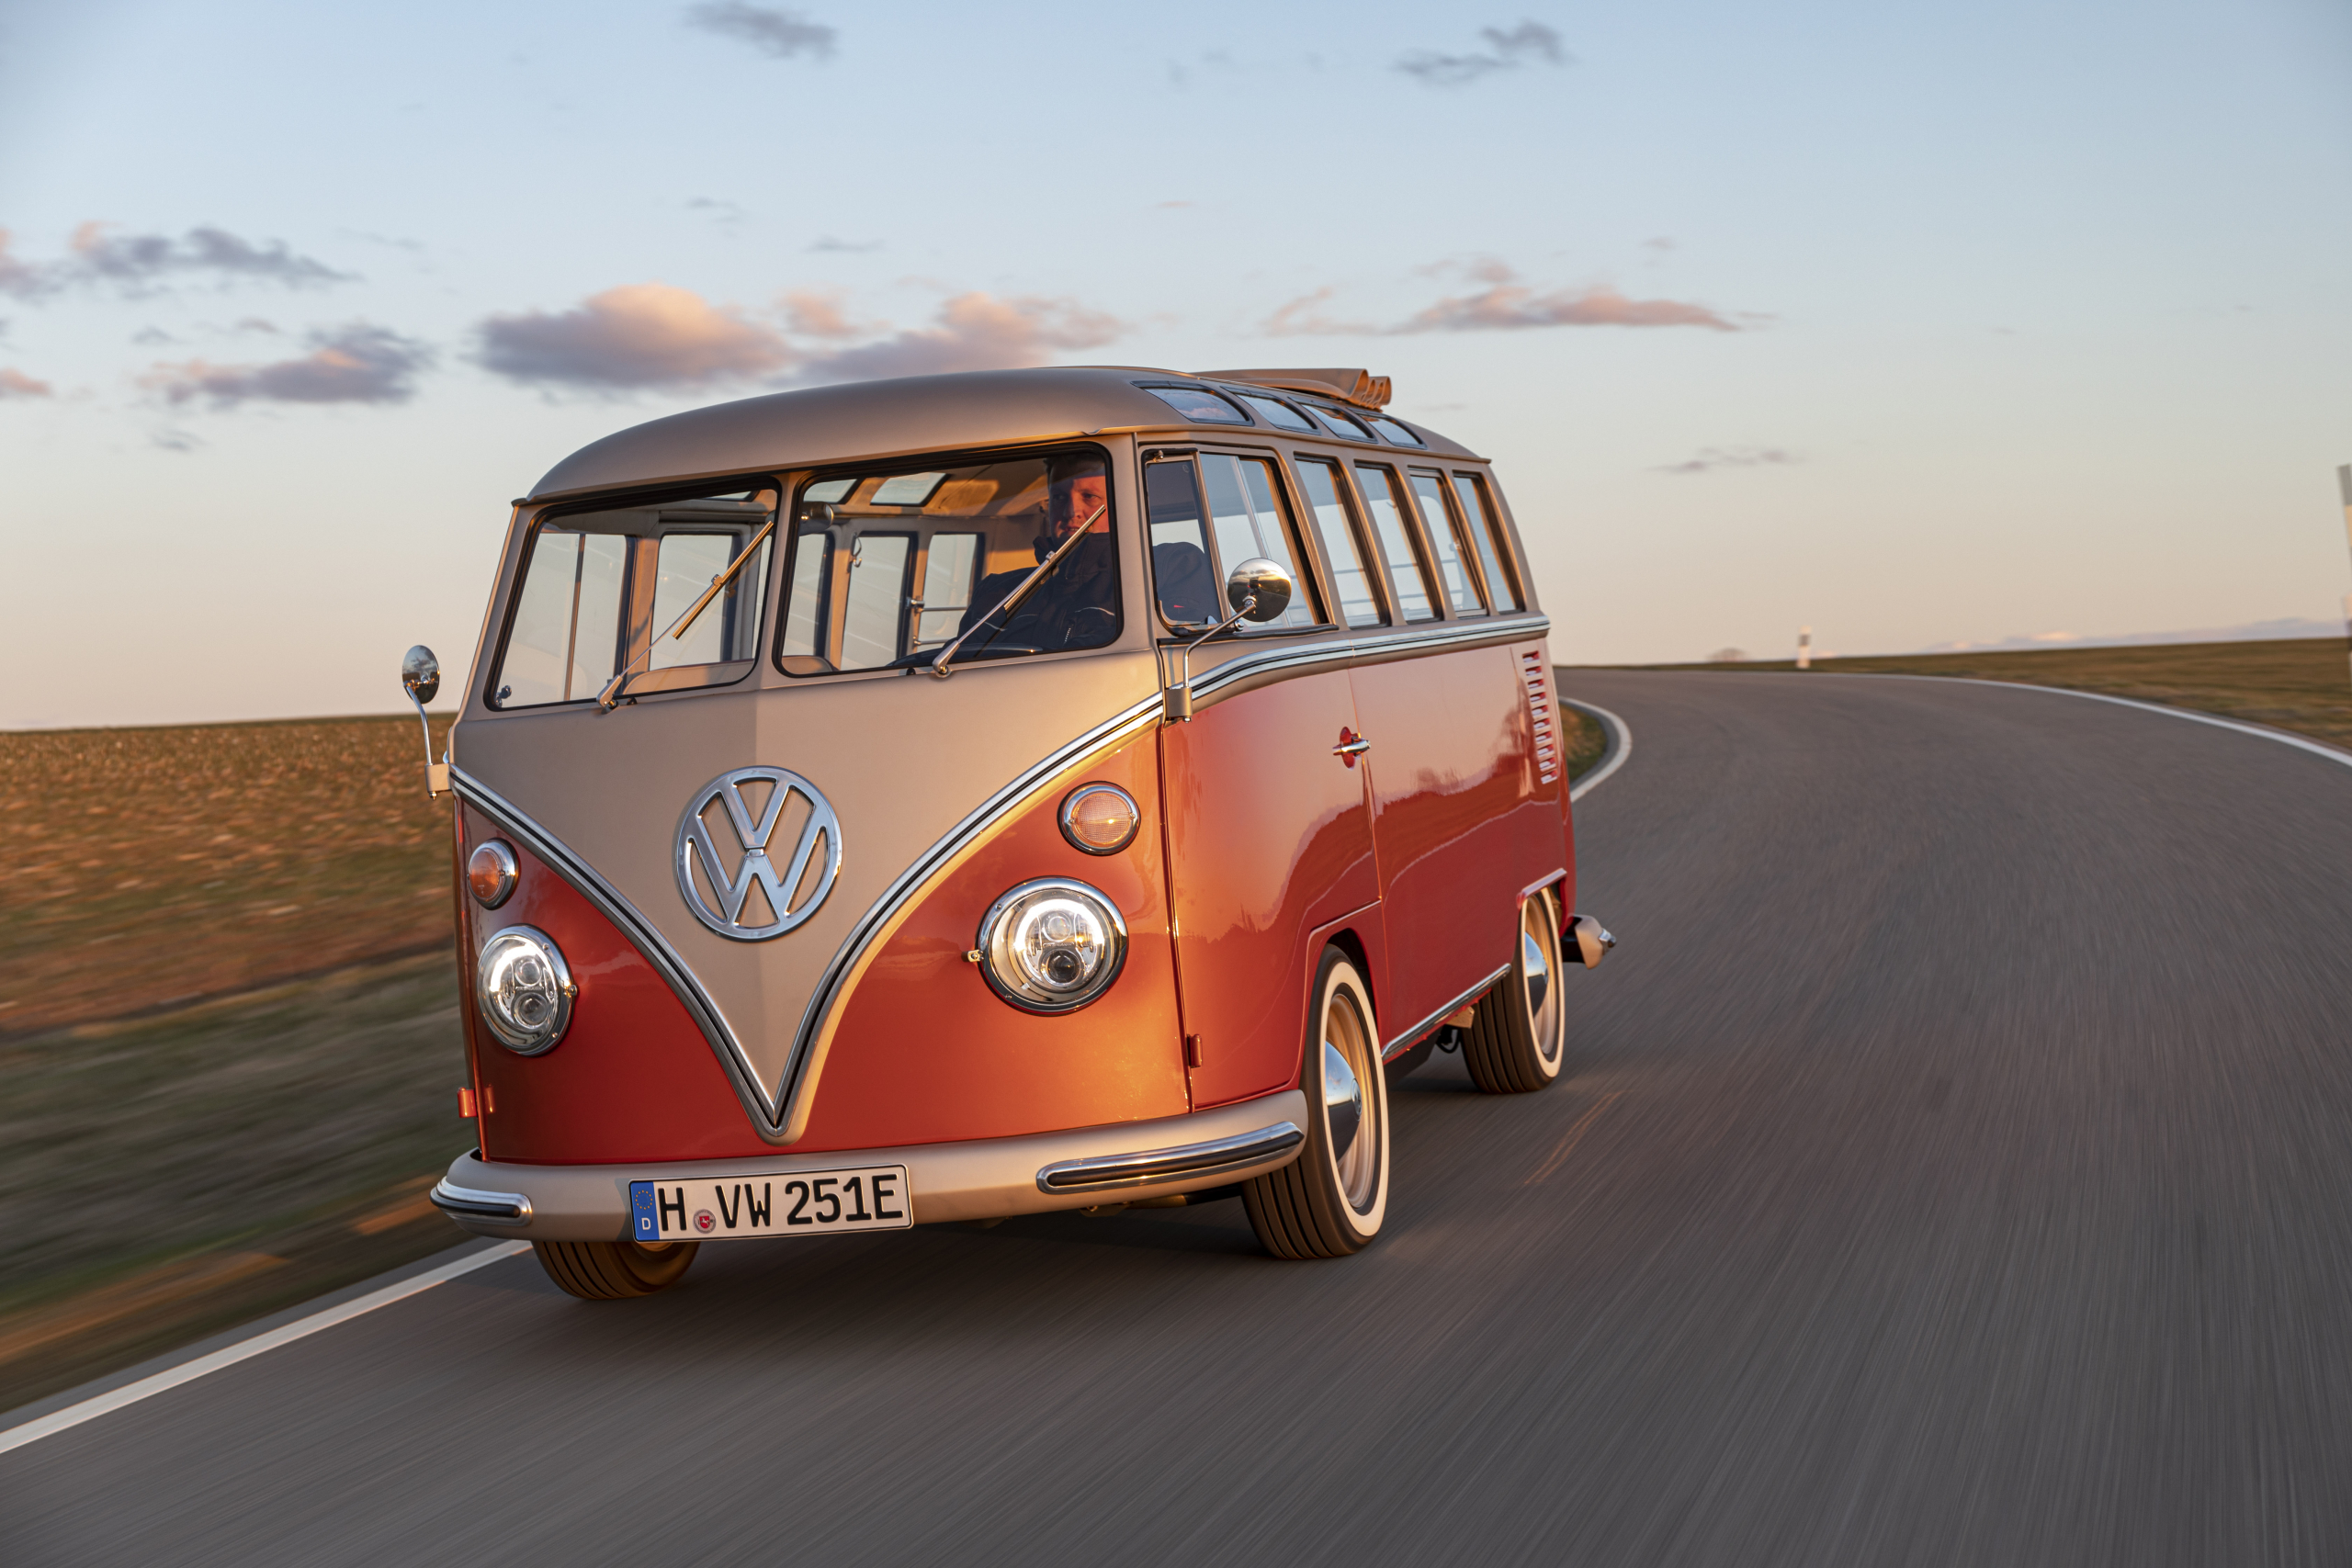 Contractie Beukende Insecten tellen De e-Bulli: klassieke elektrische Volkswagen bus in volle glorie -  AutoReview.nl